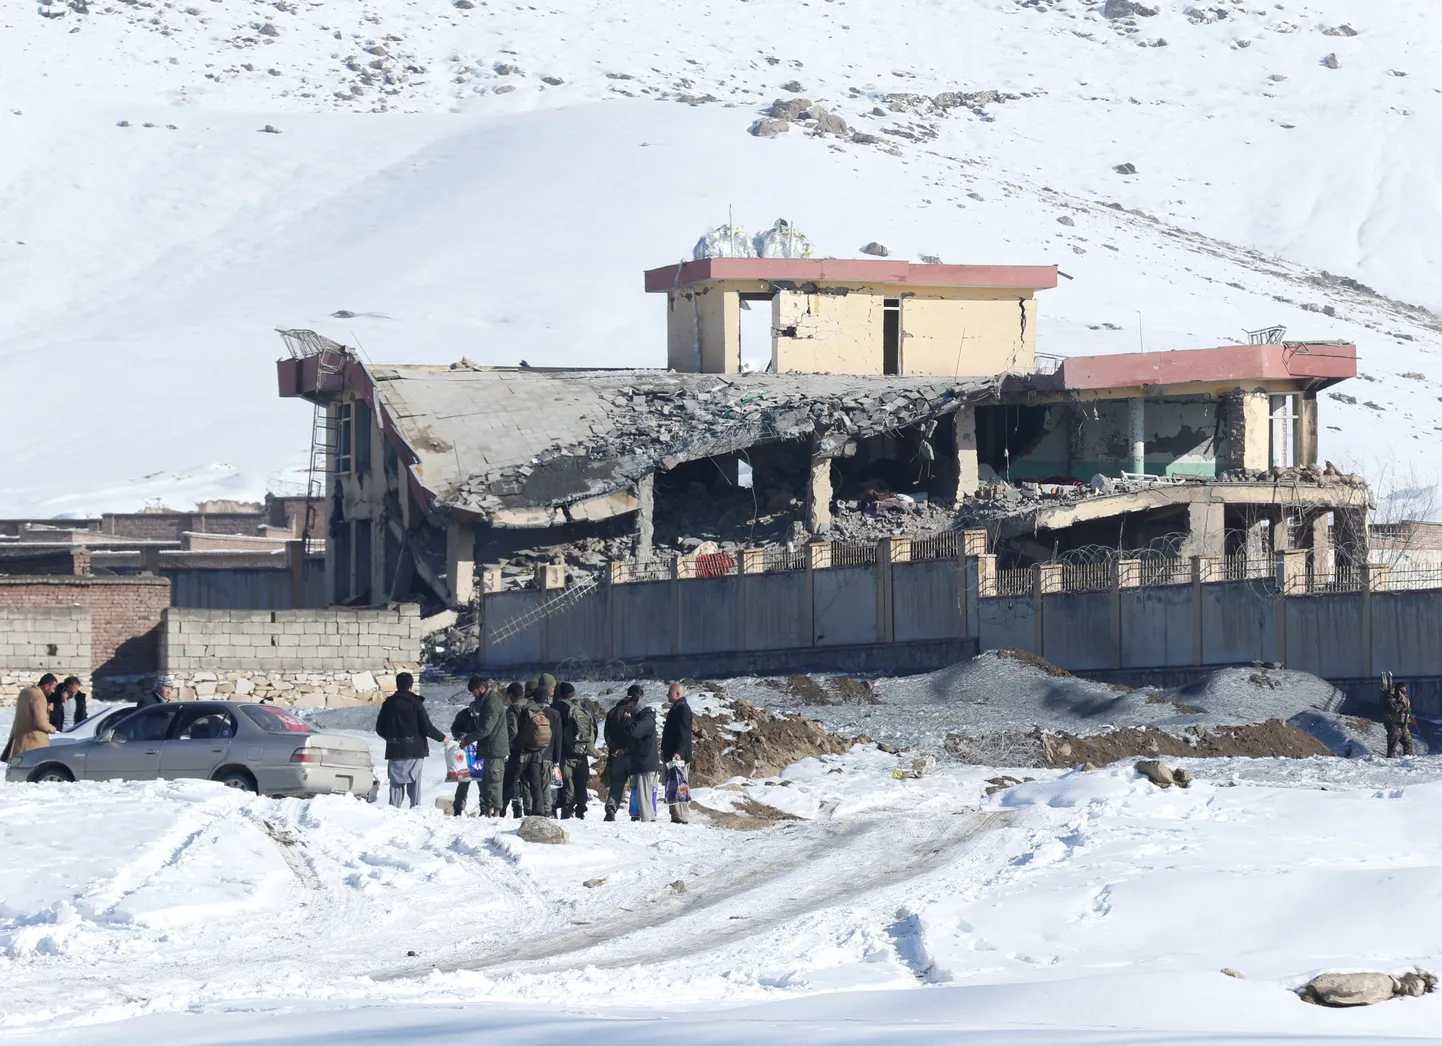 Sõjaväe treeningkeskus Maidan Wardaki provintsis Afganistanis, kus Taliban korraldas täna verise rünnaku.